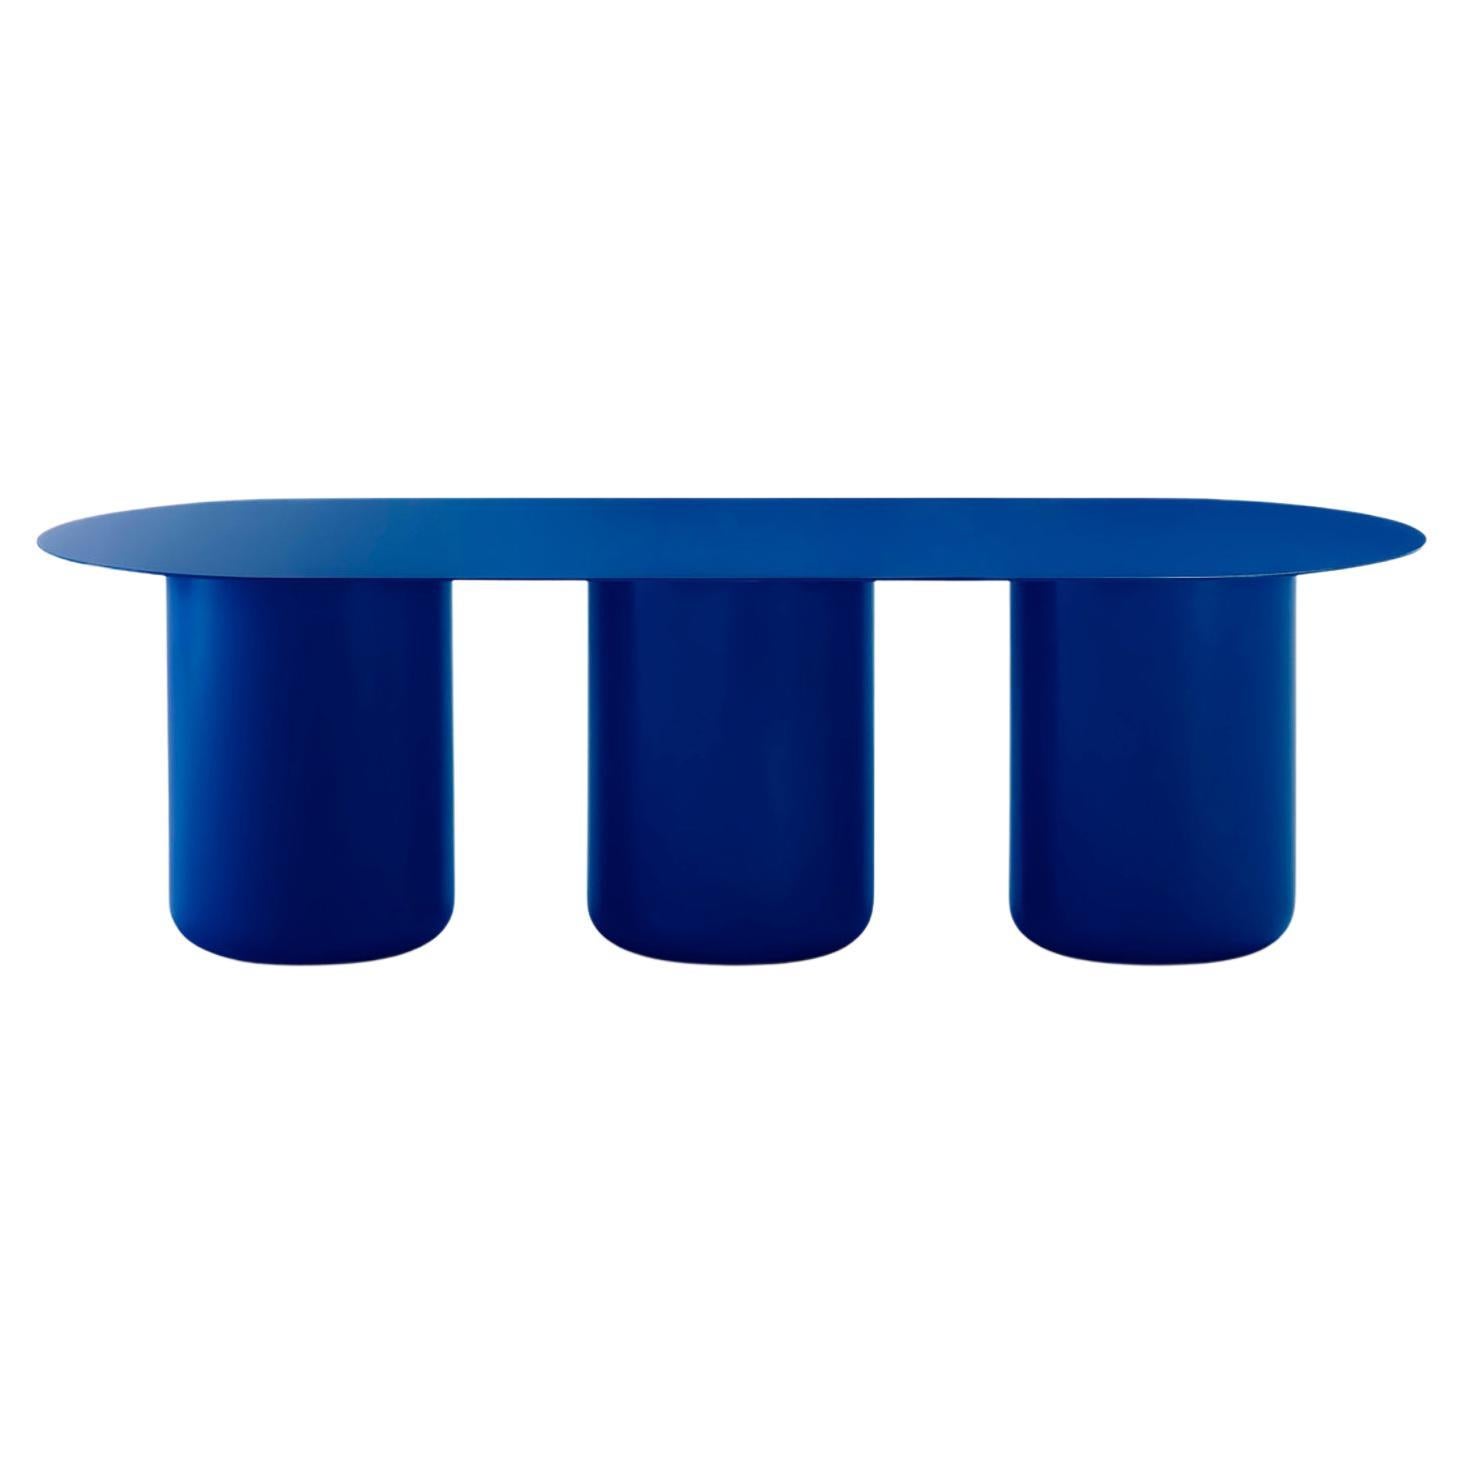 Vivid Blue Table 03 by Coco Flip